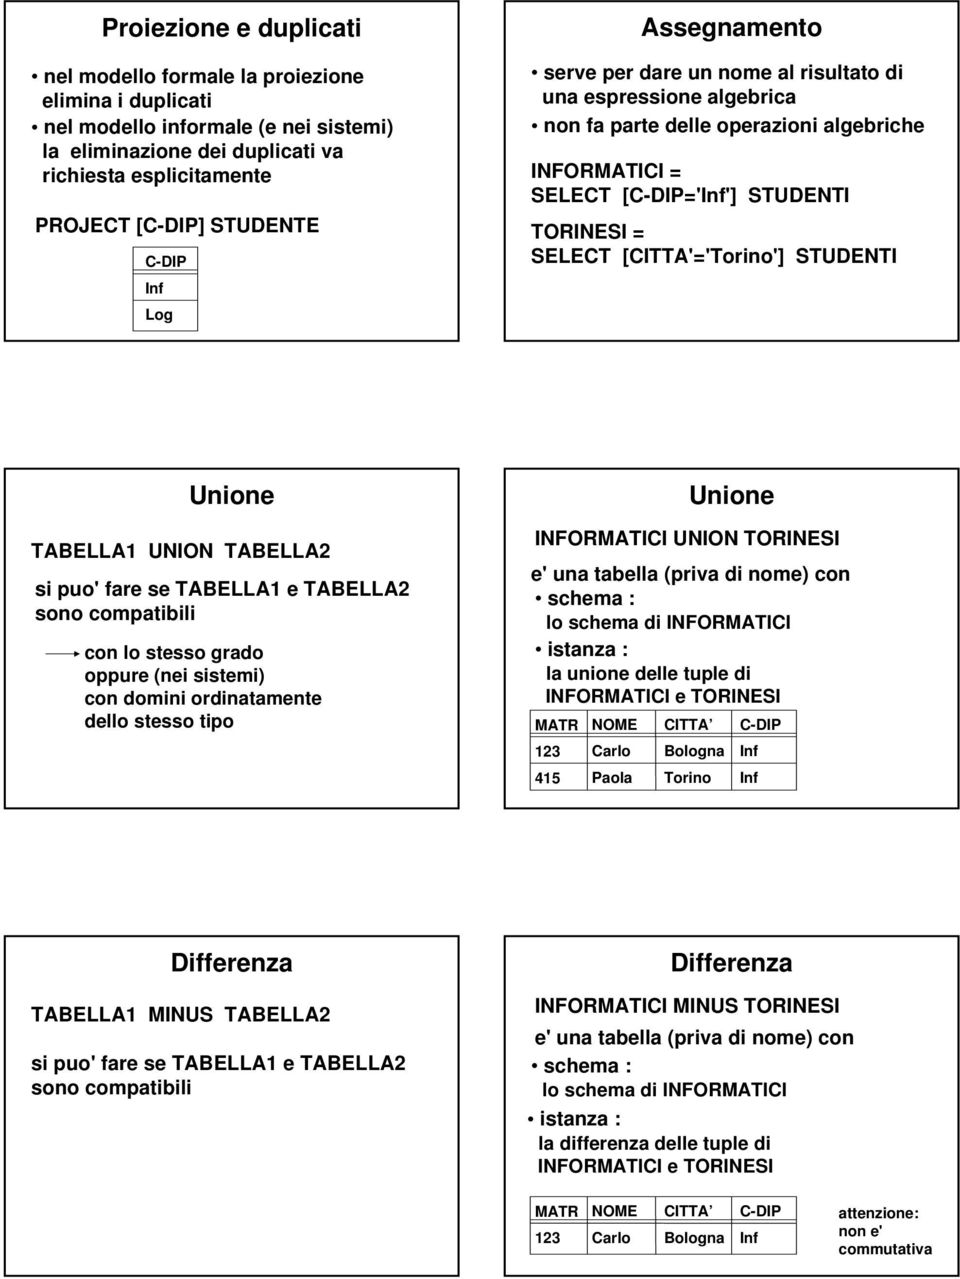 [CITTA'='Torino'] STUDENTI Unione TABELLA UNION TABELLA si puo' fare se TABELLA e TABELLA sono compatibili con lo stesso grado oppure (nei sistemi) con domini ordinatamente dello stesso tipo 45 NOME